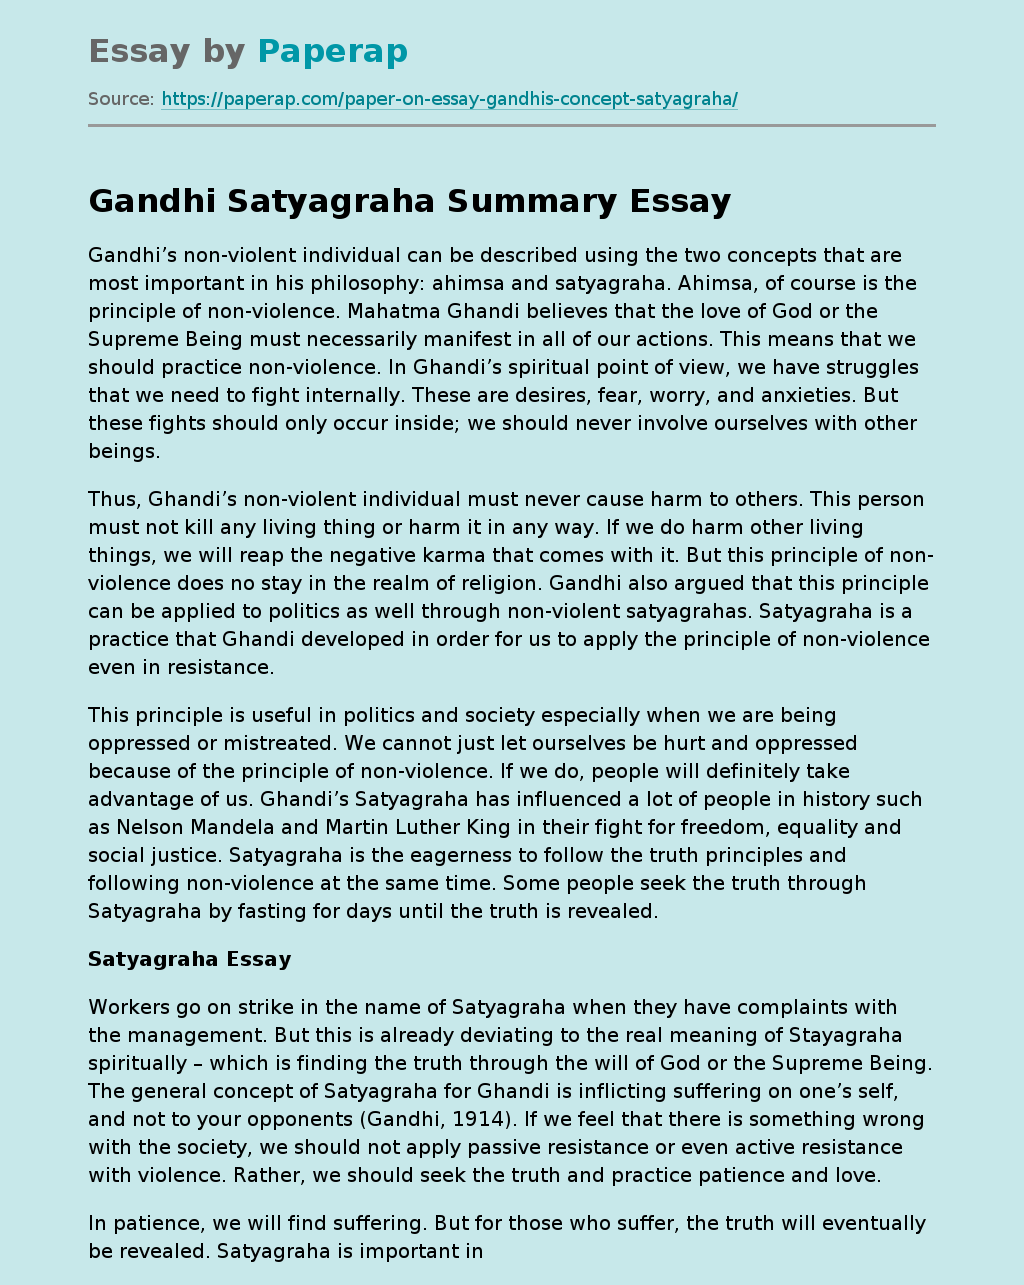 Gandhi Satyagraha Summary